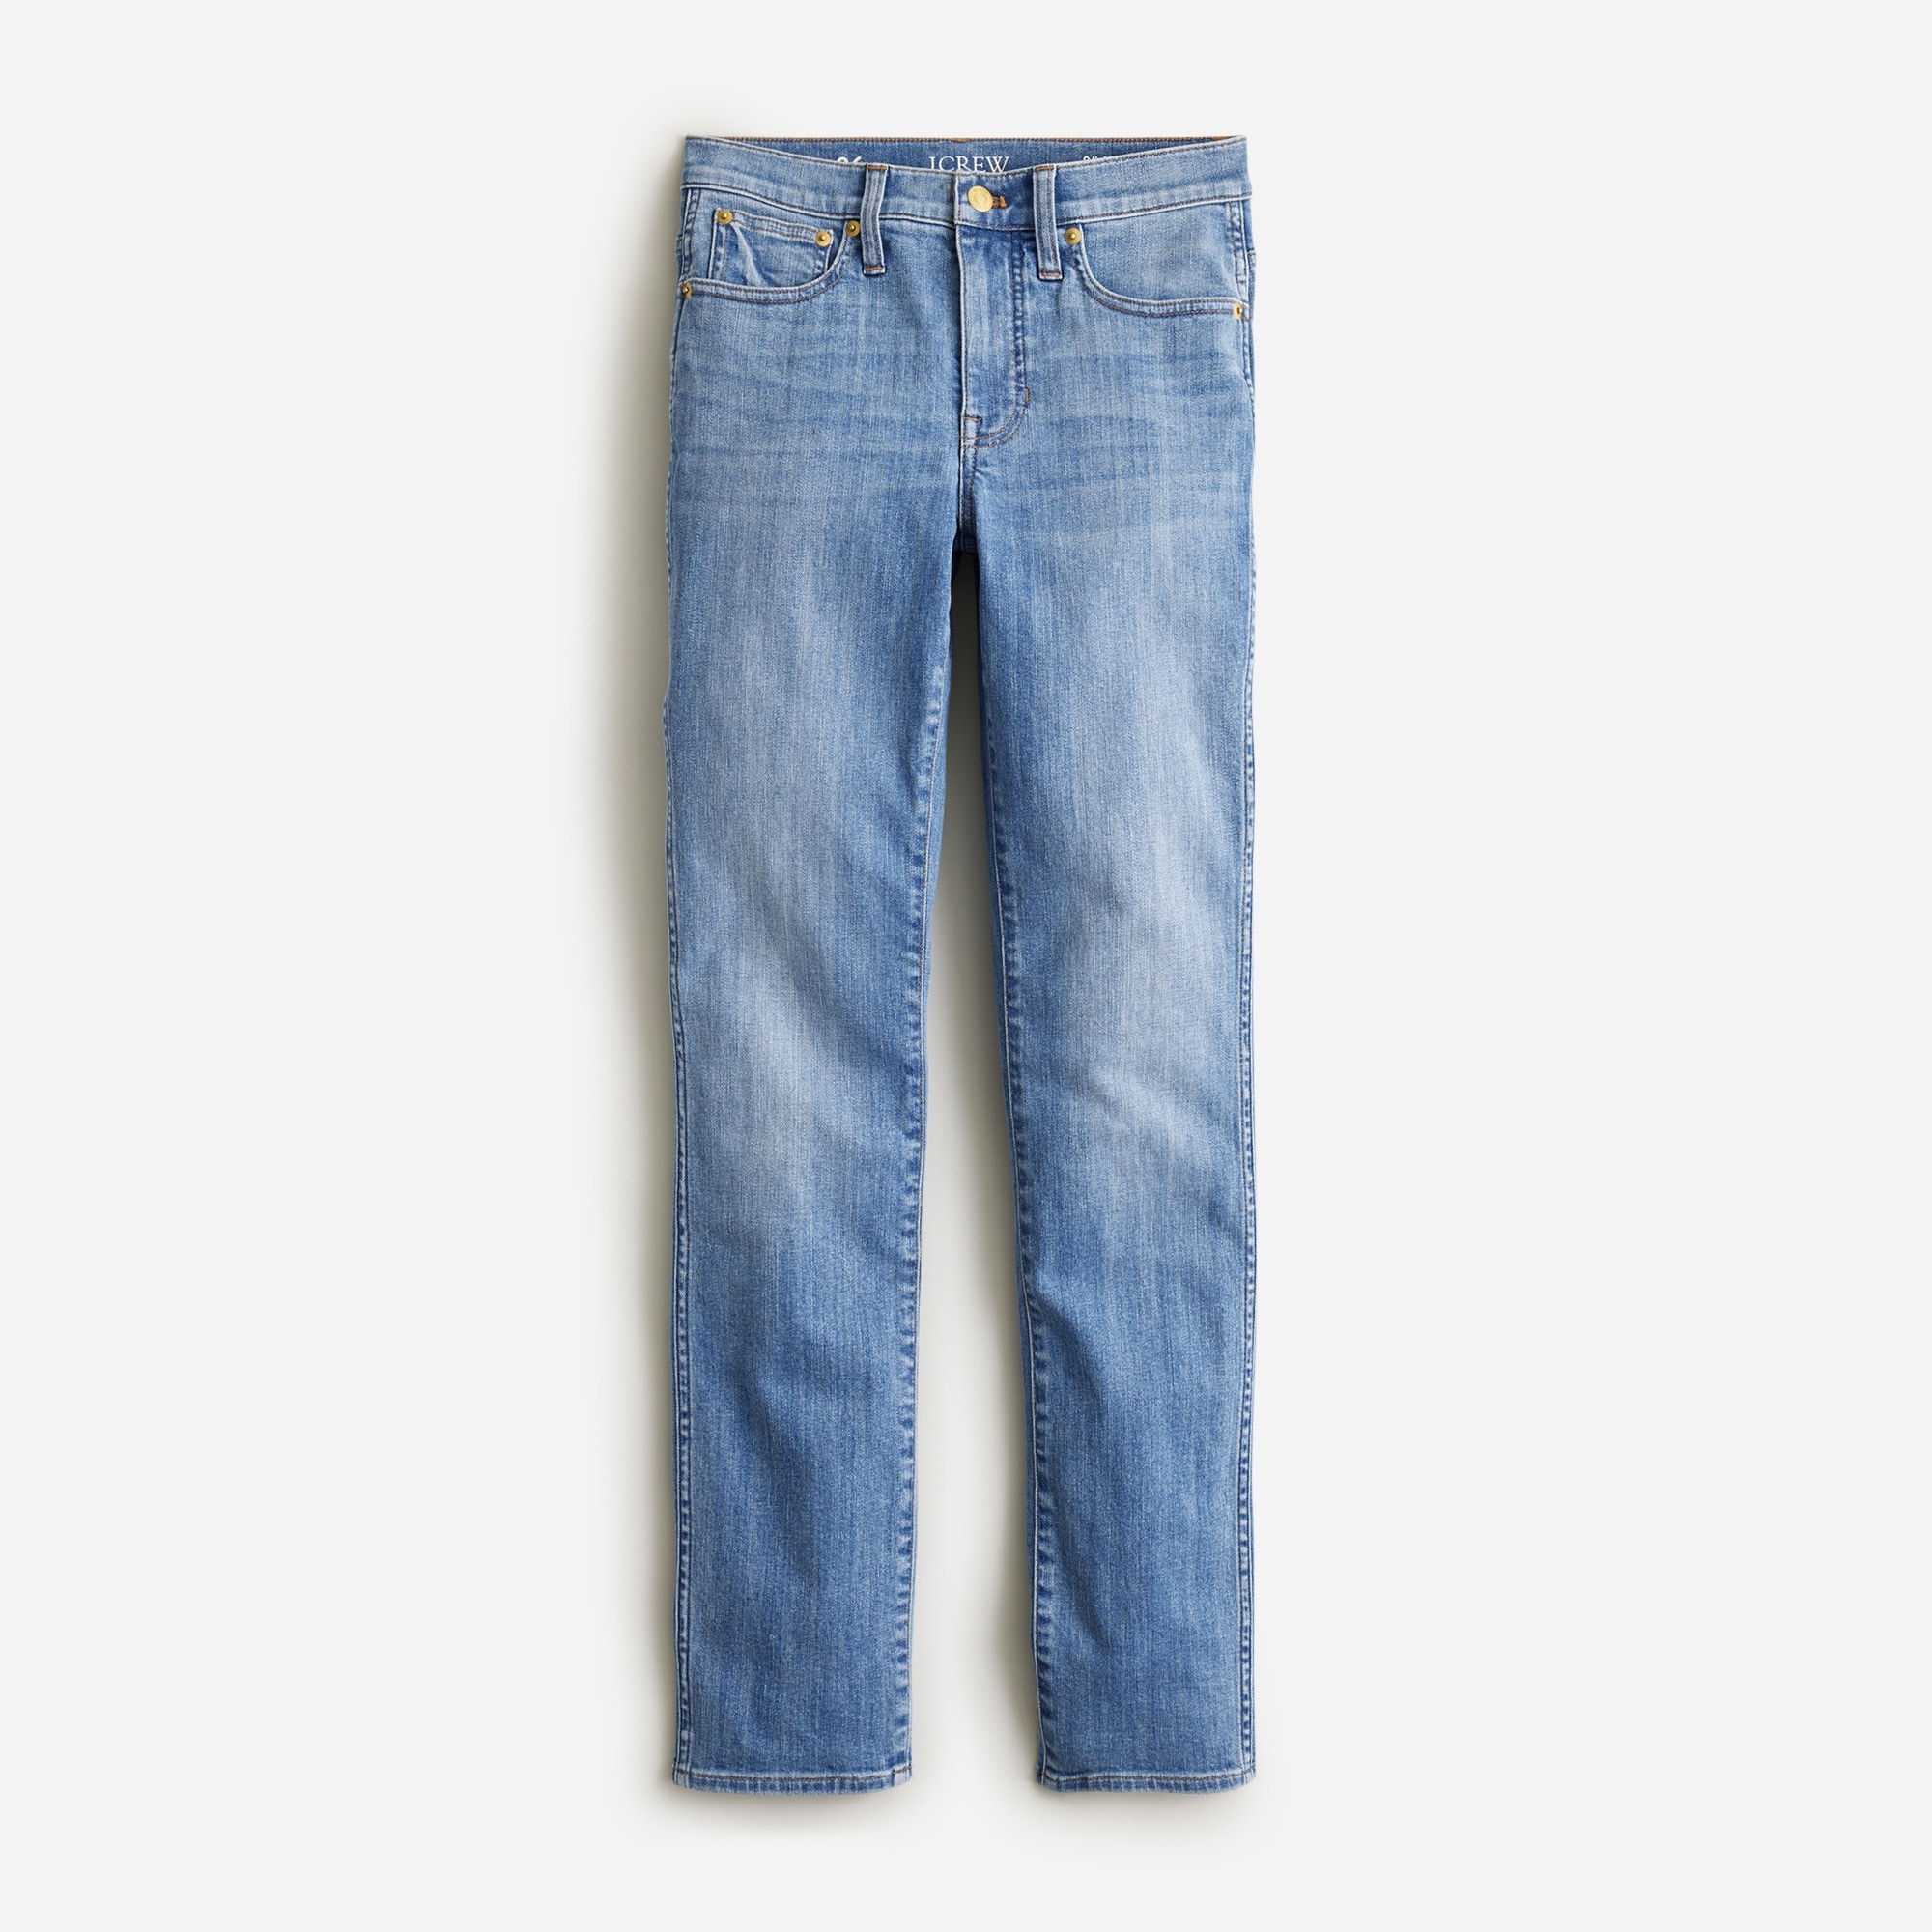  Petite vintage slim-straight jean in Lakewood wash